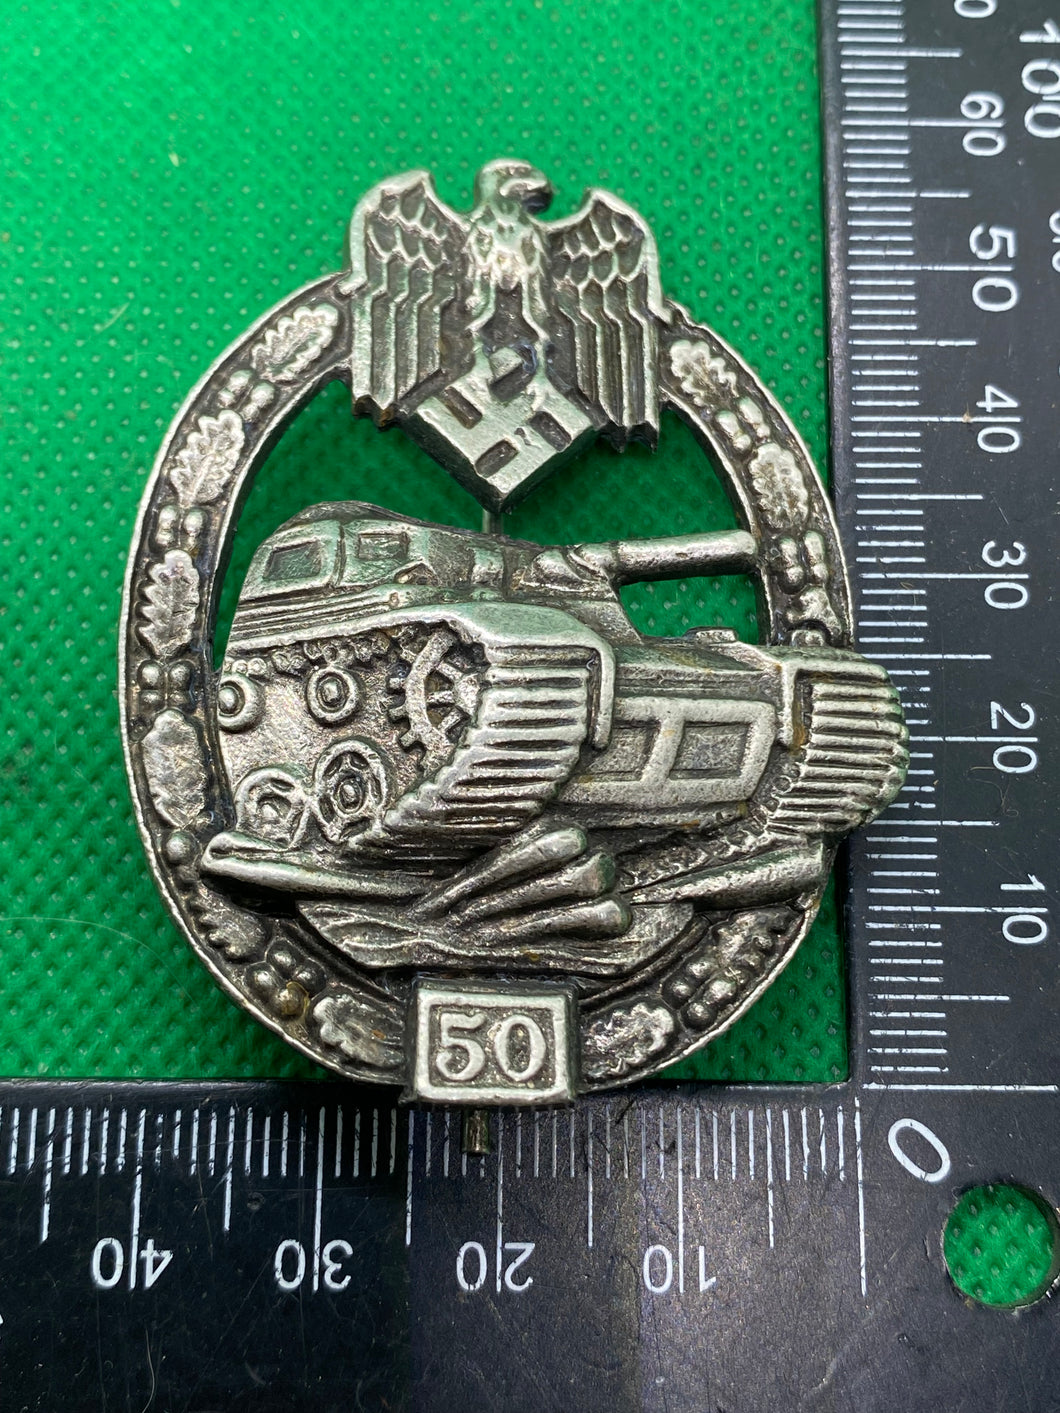 WW2 German Army Panzer Assault 50 Panzer Assault Badge / Award Reproduction